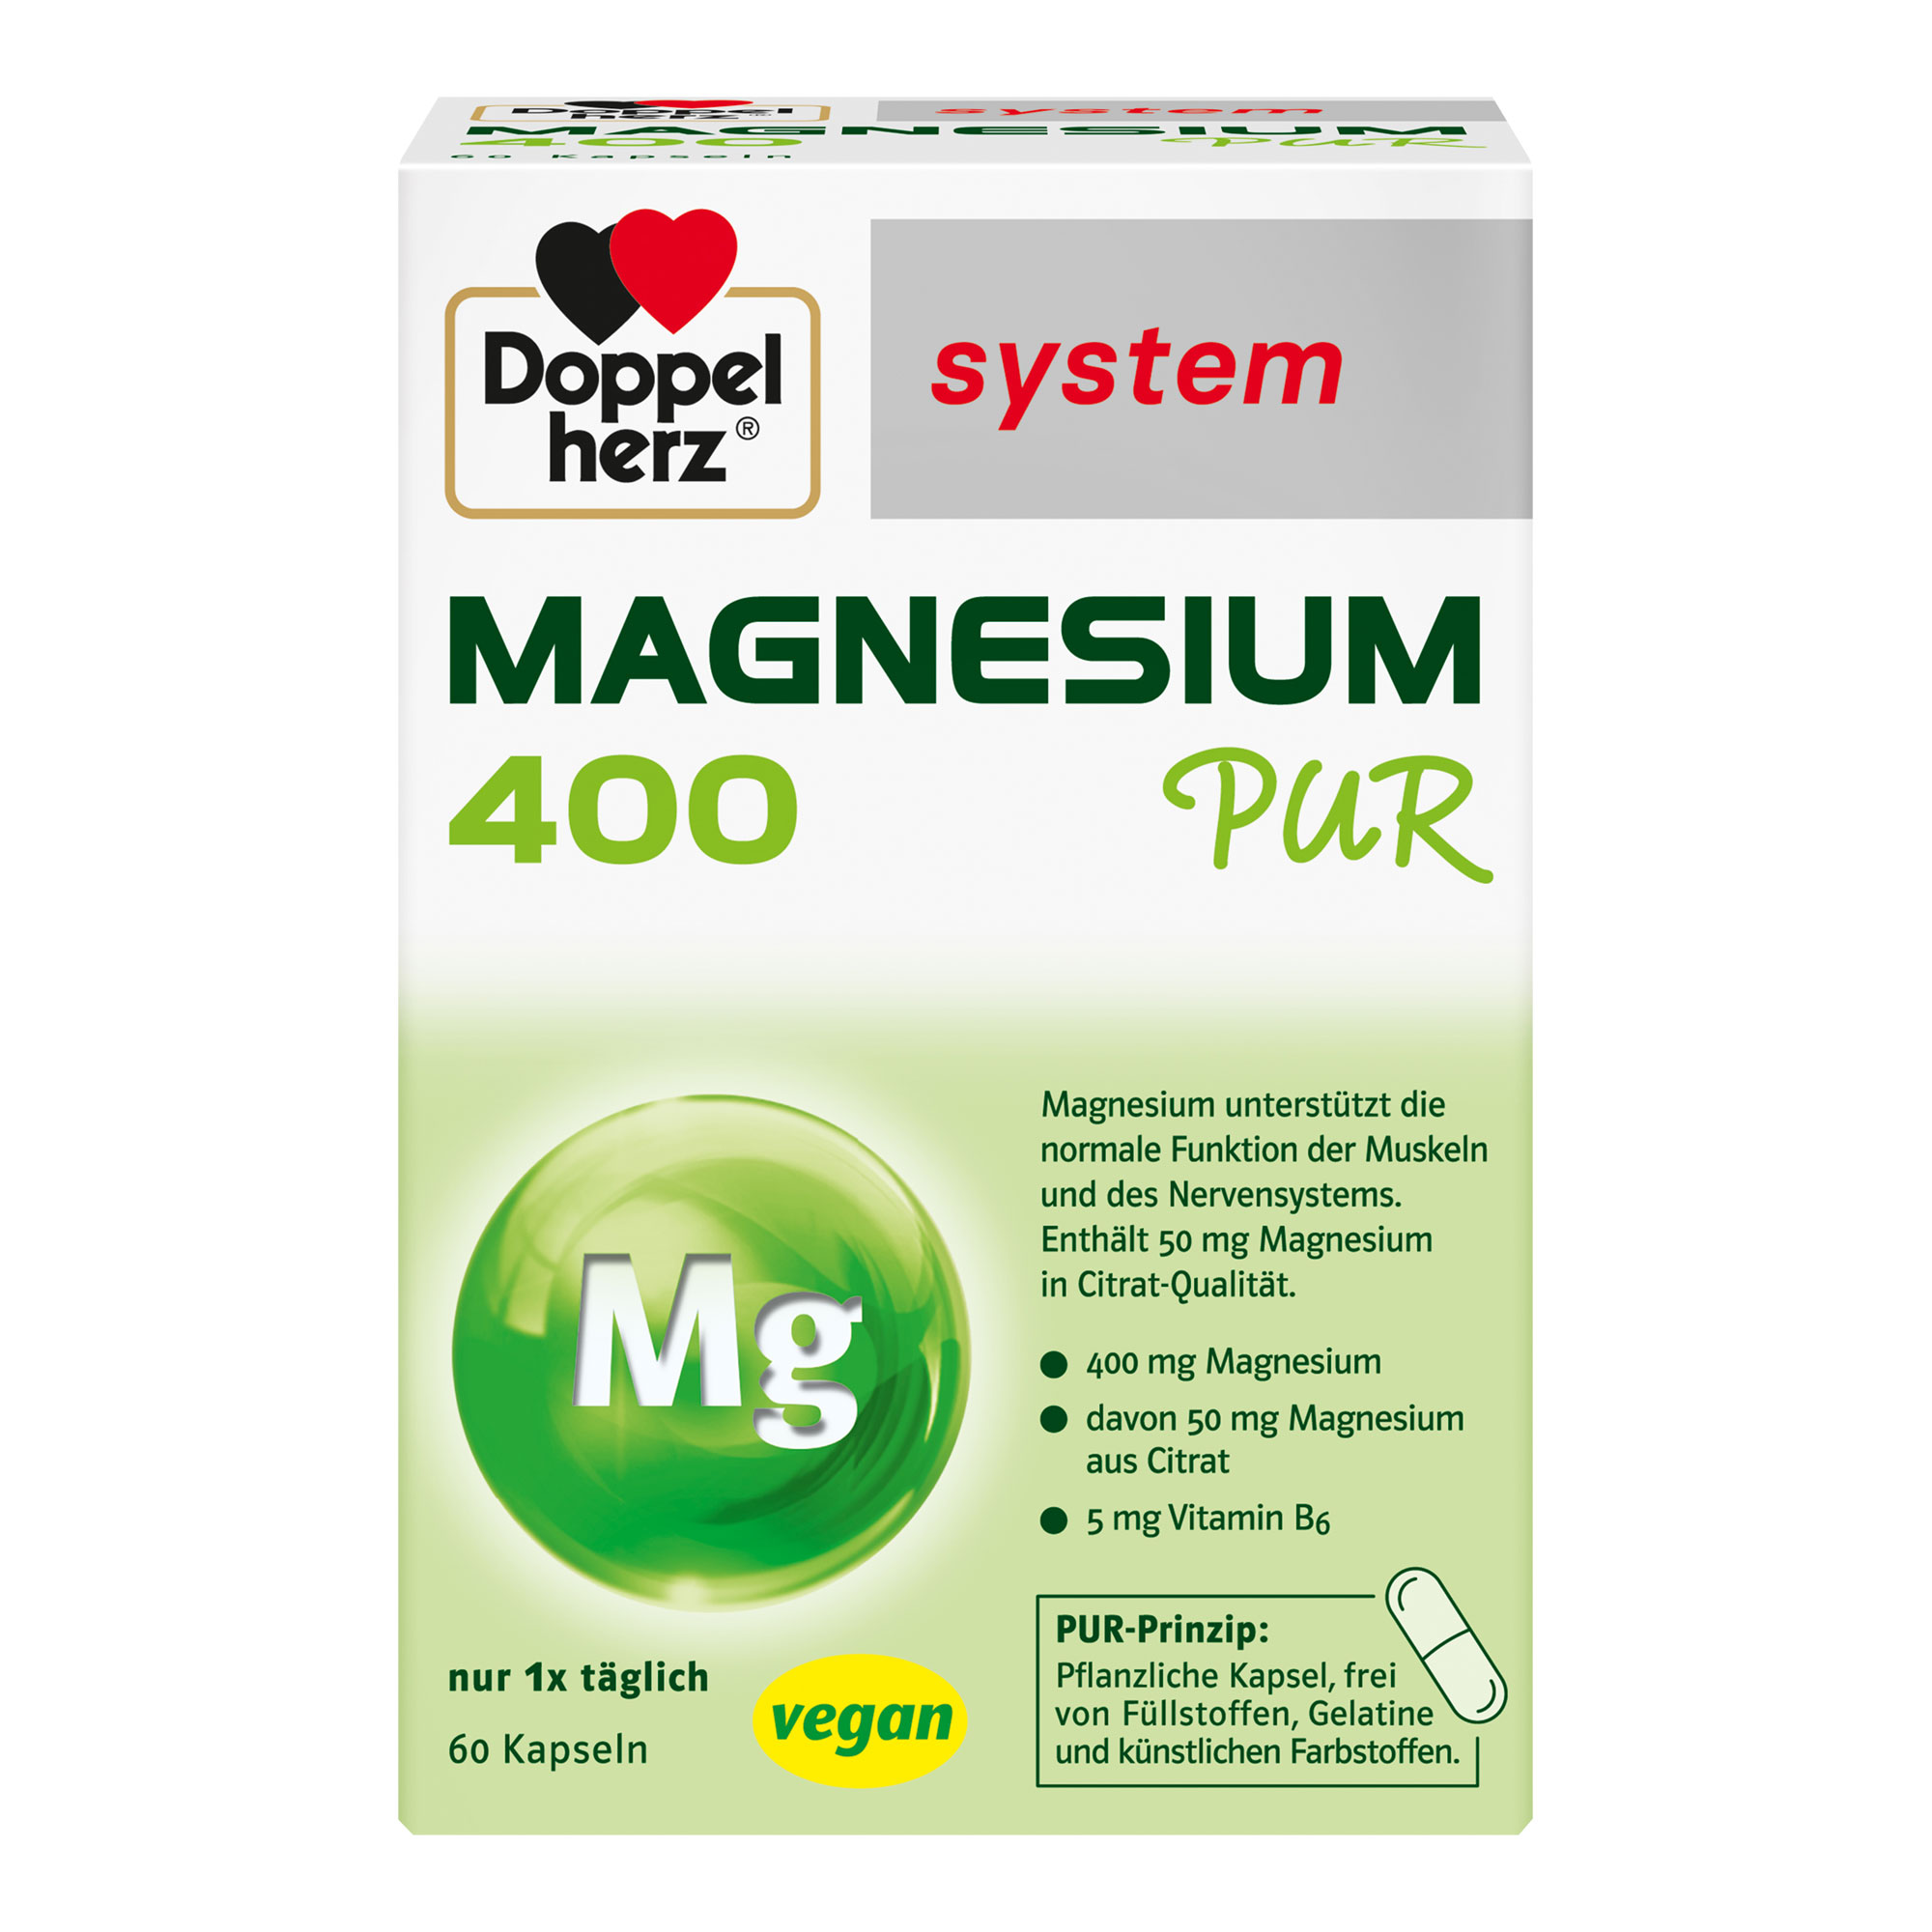 Nahrungsergänzungsmittel mit Magnesium und Vitamin B6 in Form einer pflanzlichen Kapsel.